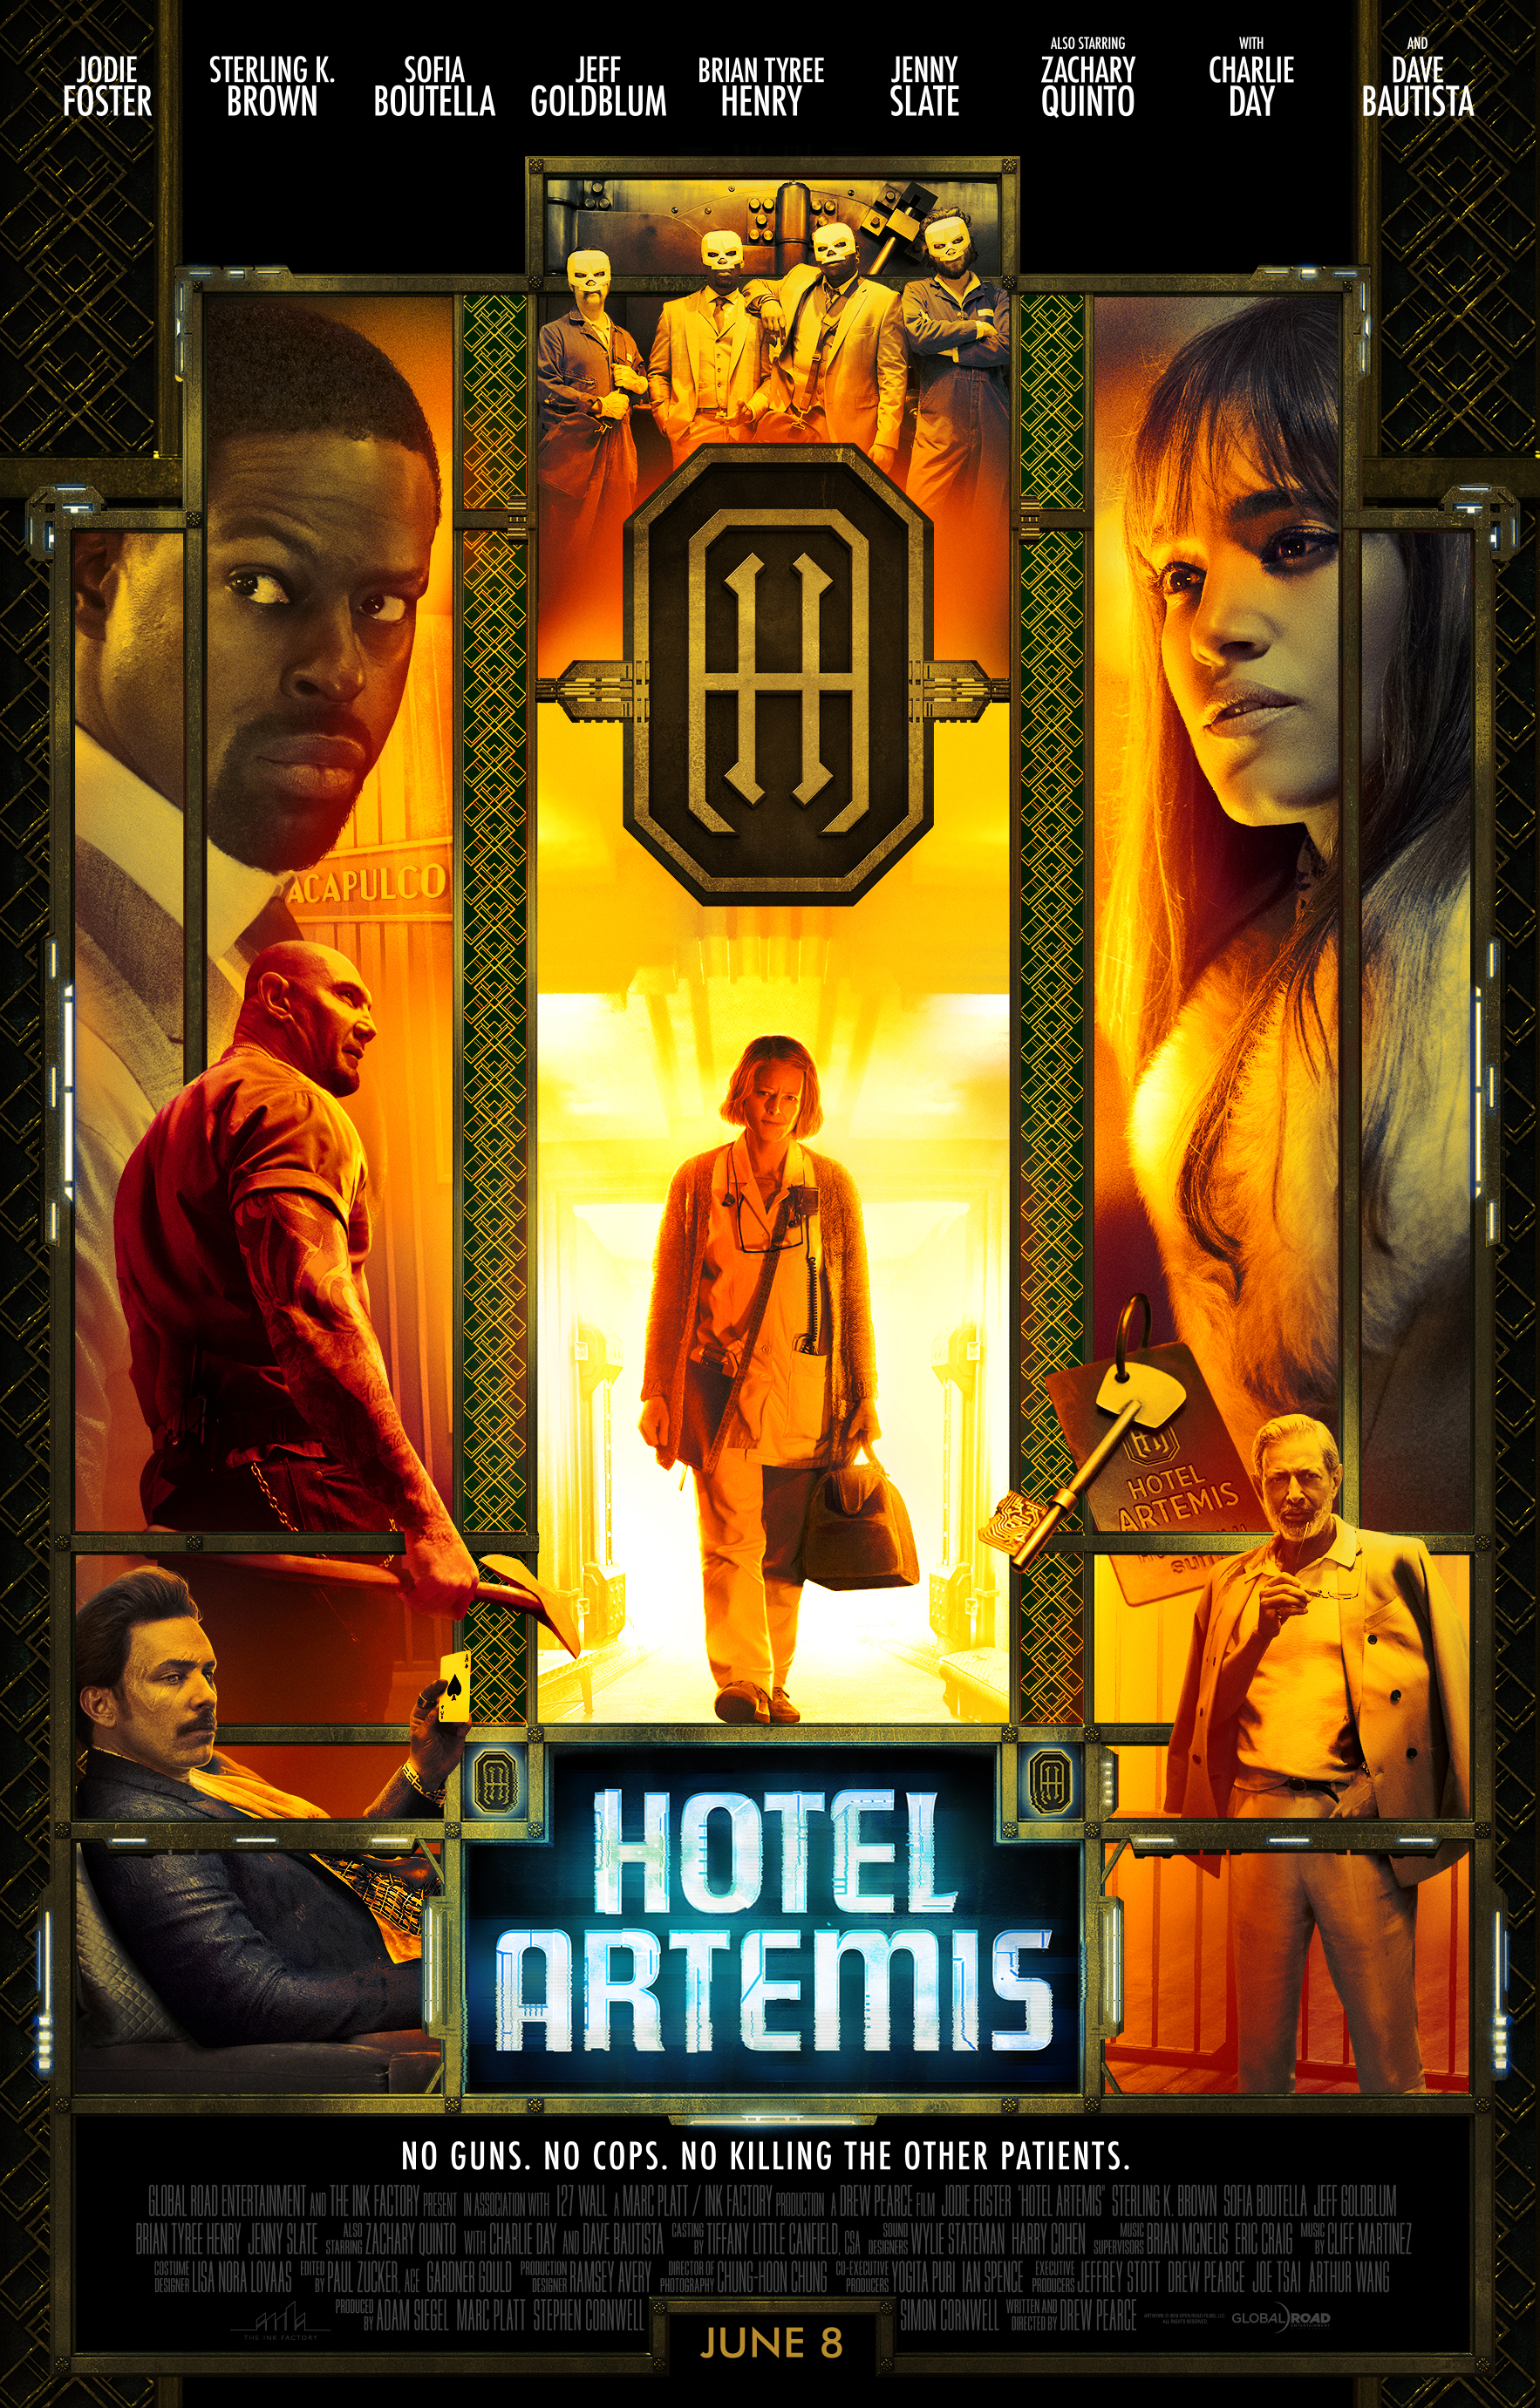 Hotel Artemis poster (Global Road Entertainment)